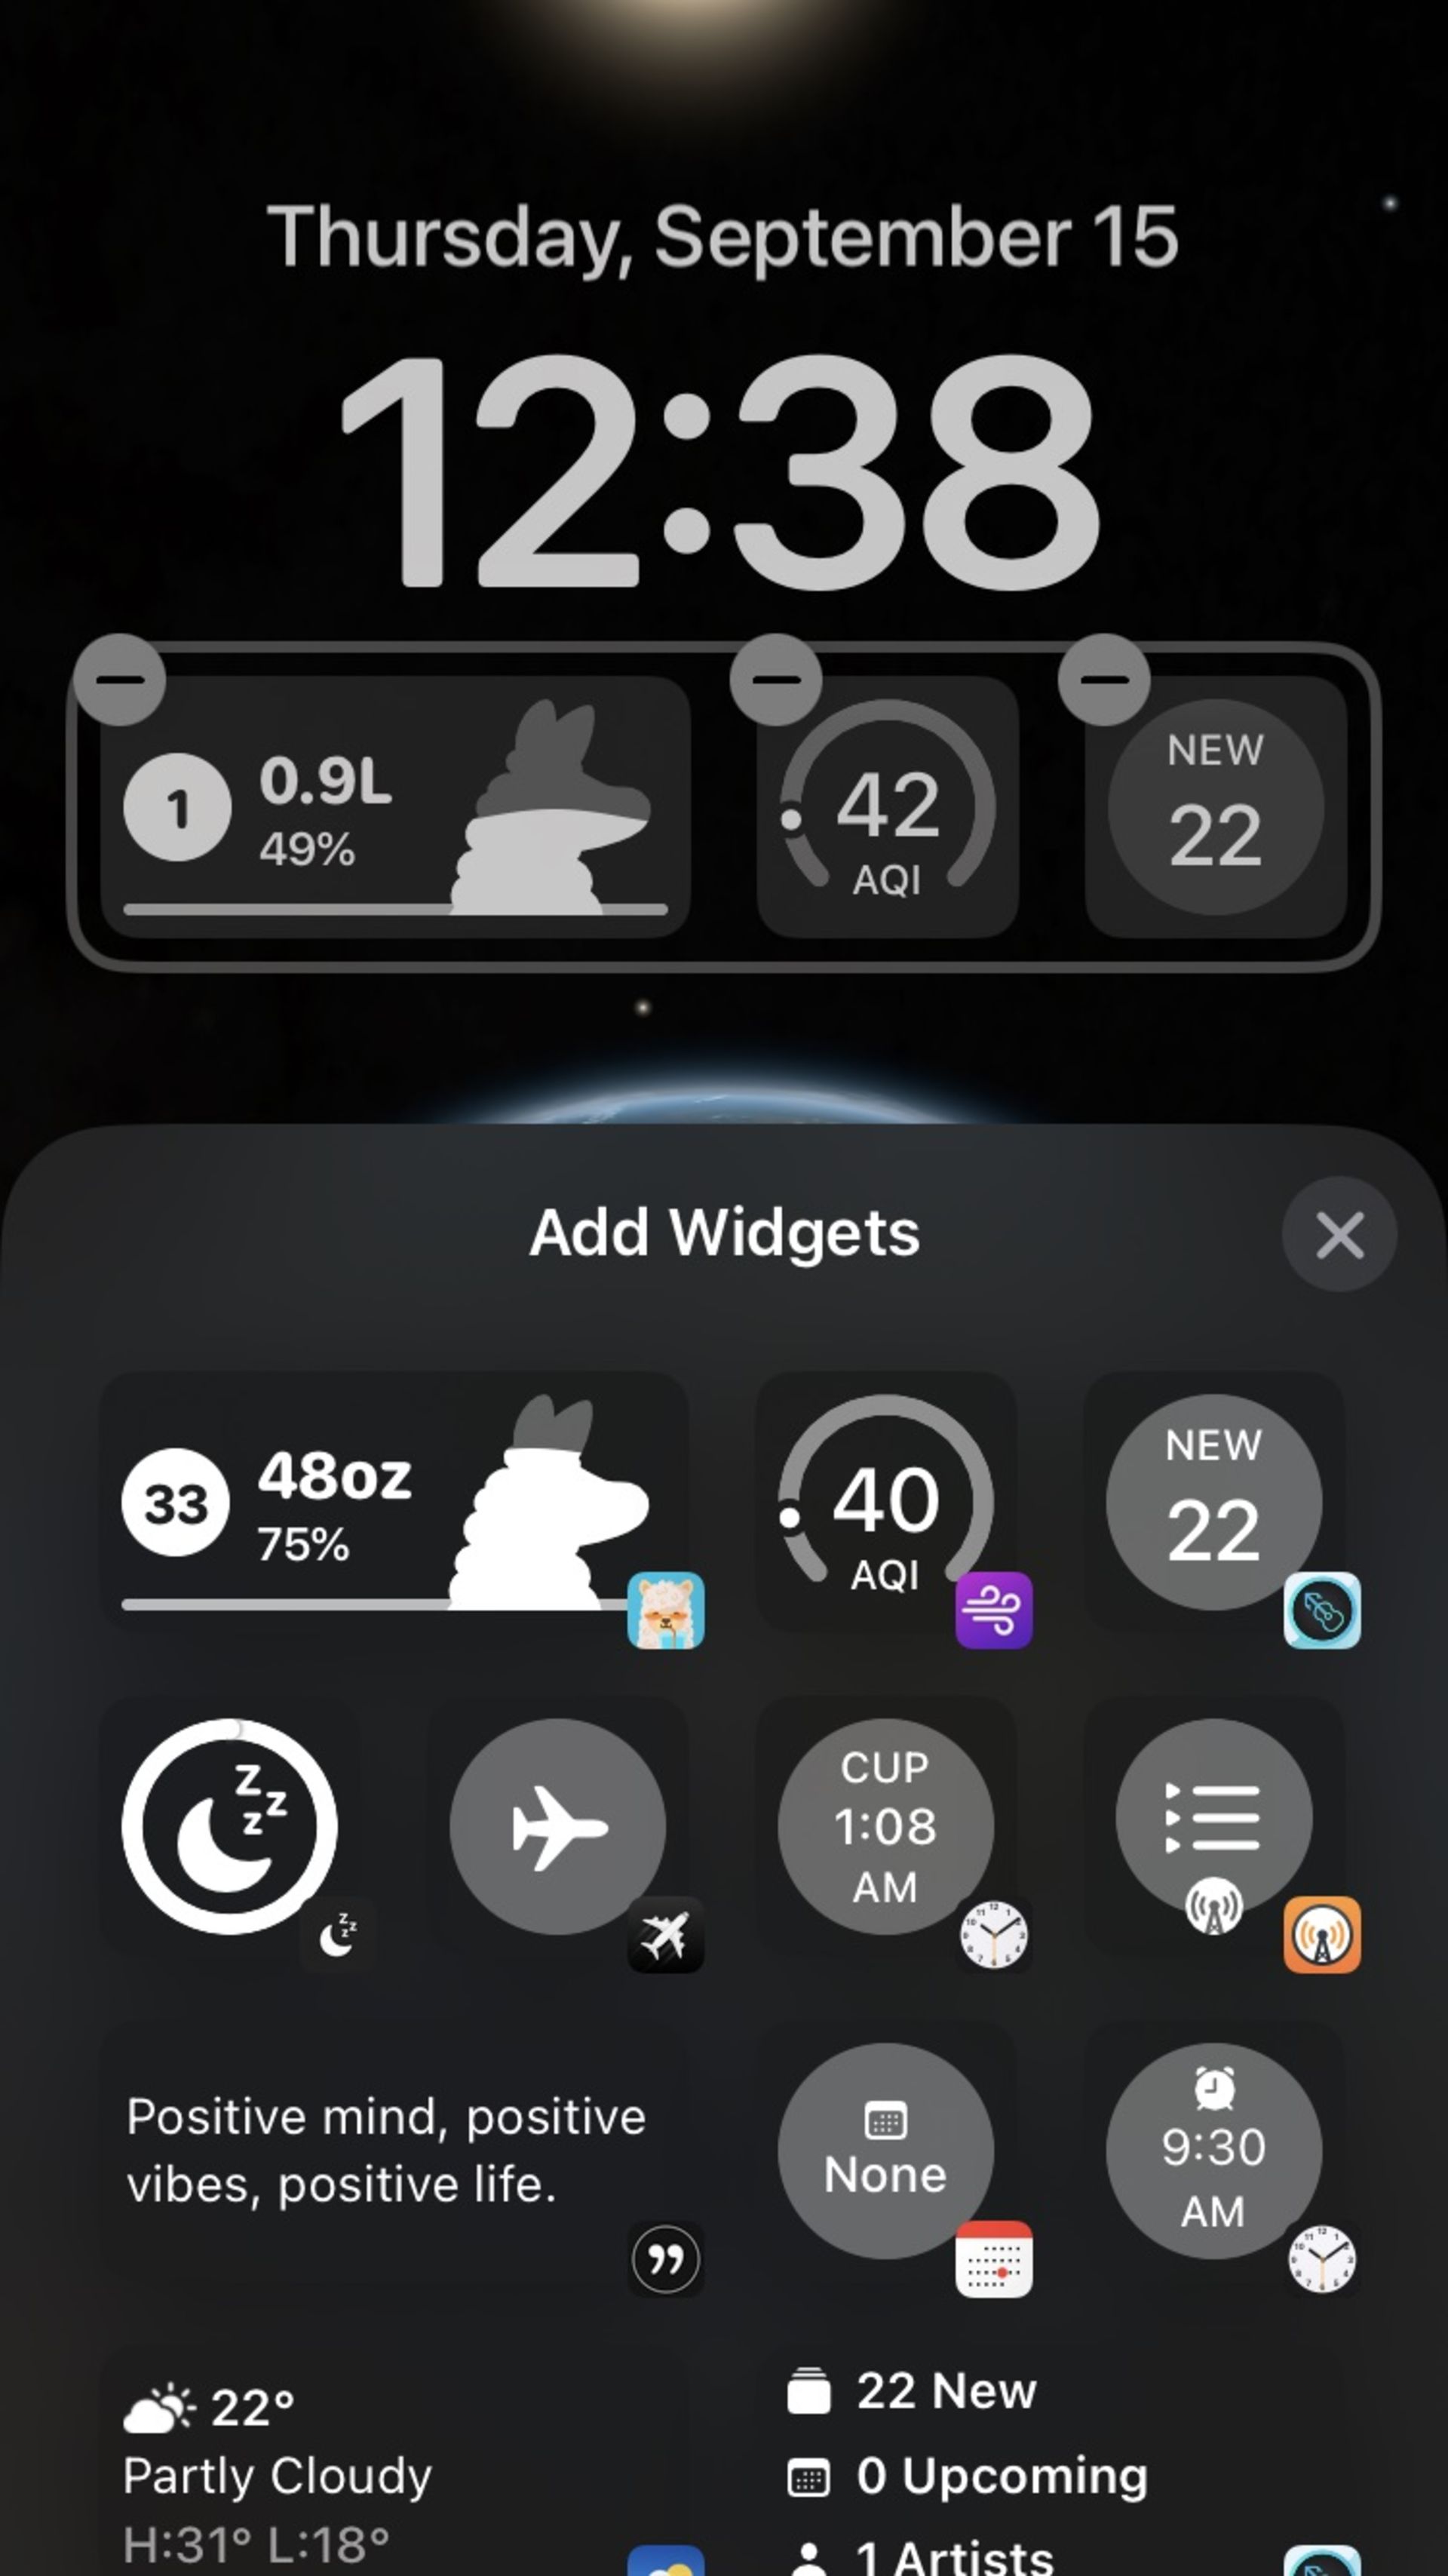 لاک اسکرین در iOS 16